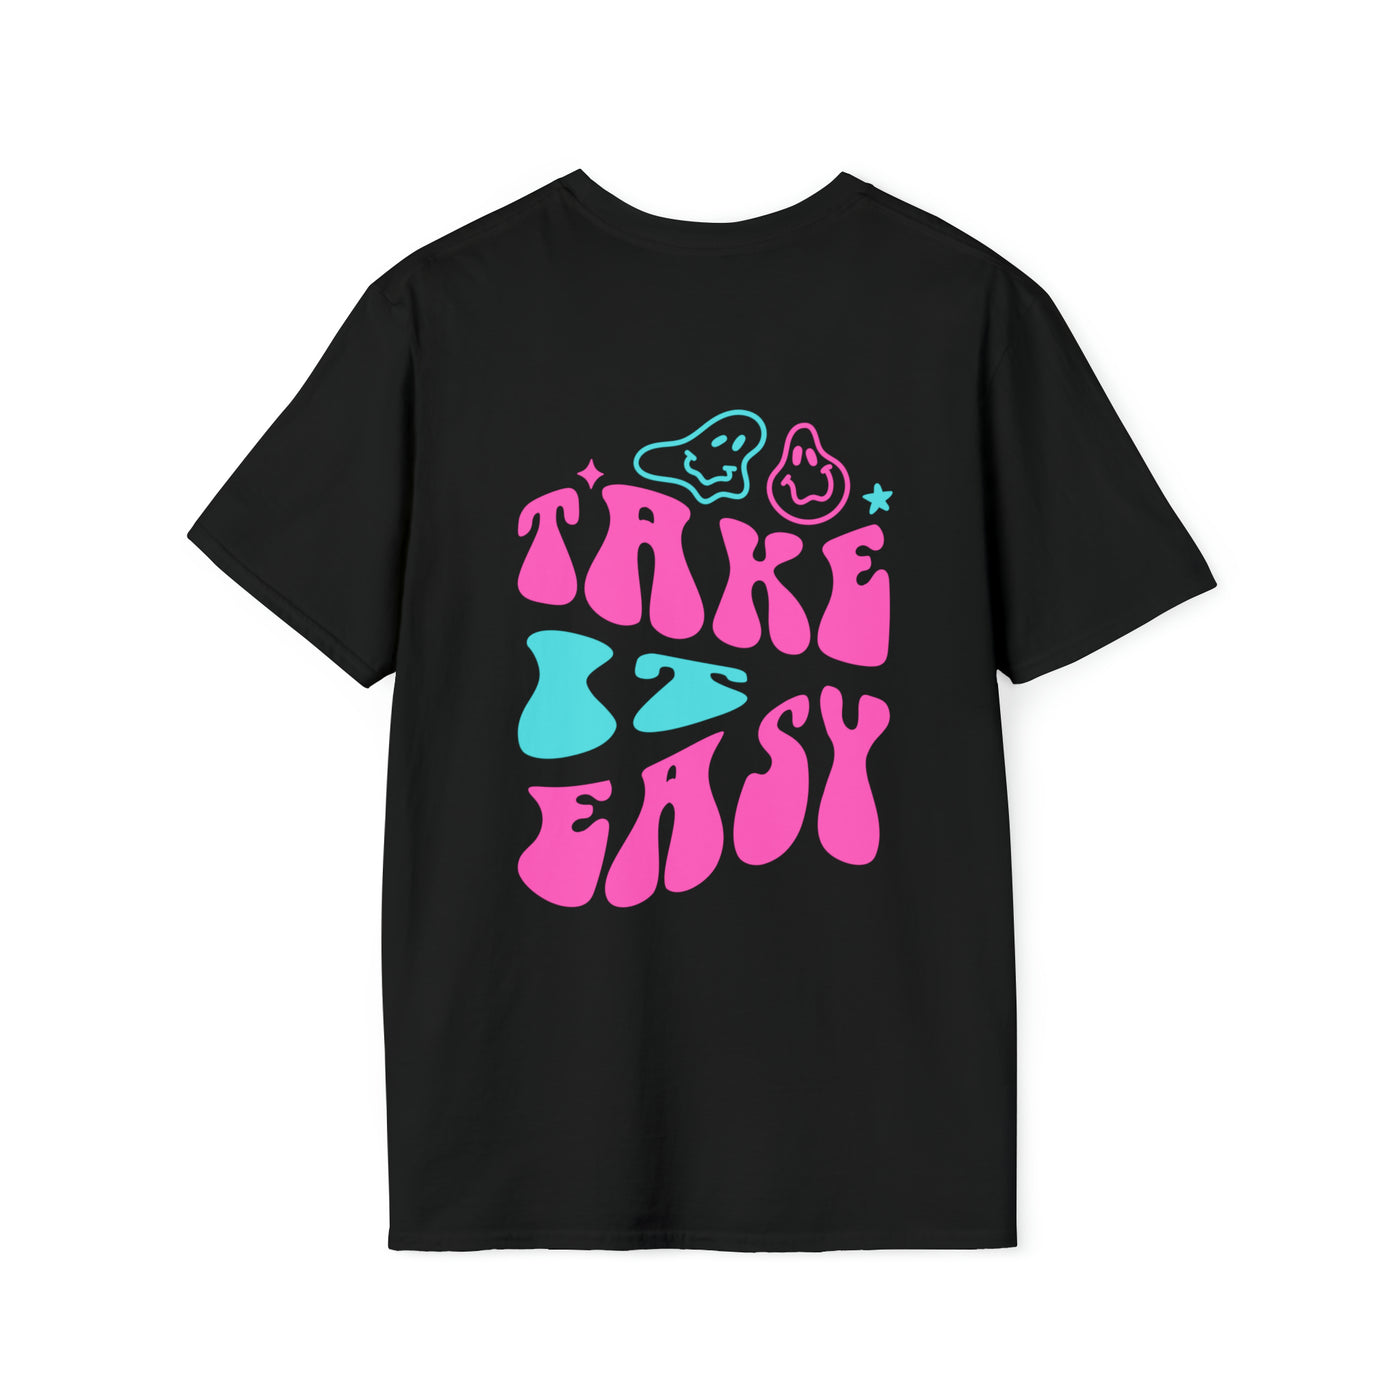 Wakes2u "take it easy" T-Shirt